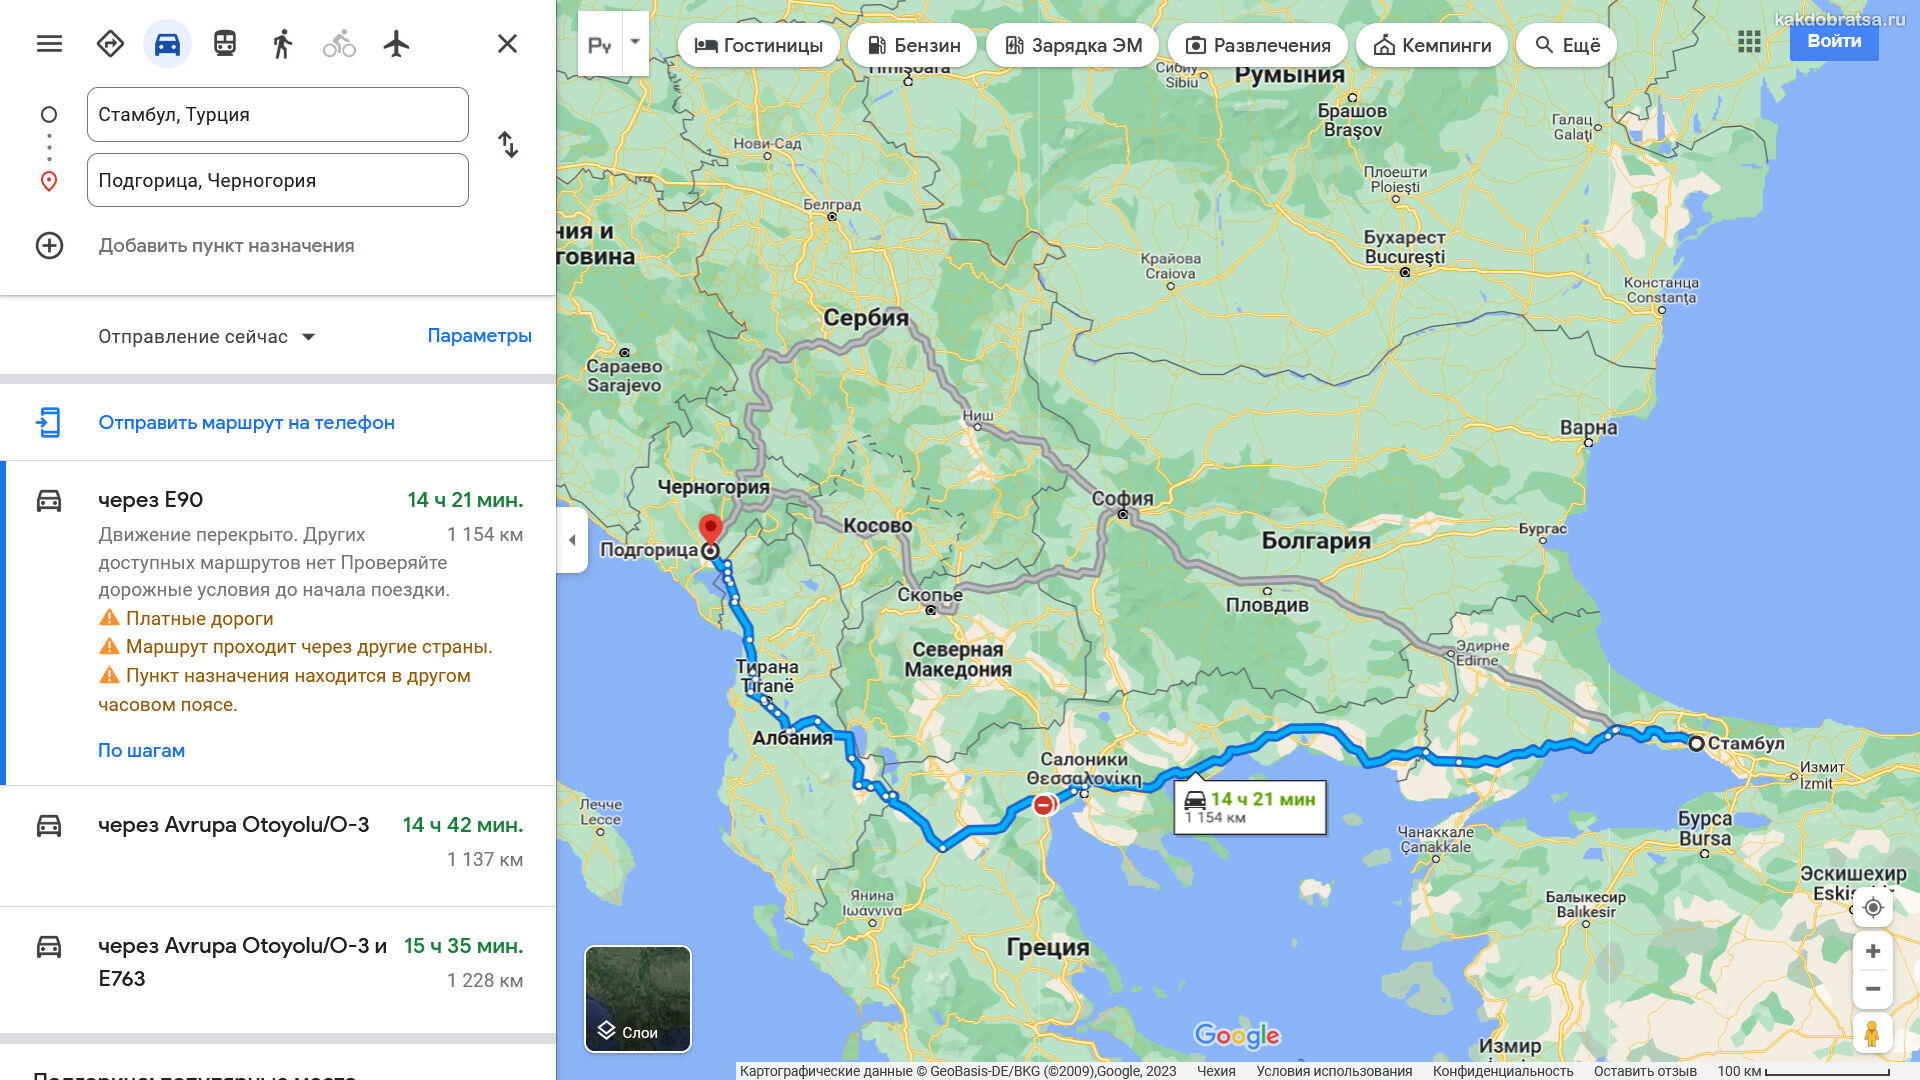 Расстояние от Стамбула до Подгорицы по карте в км